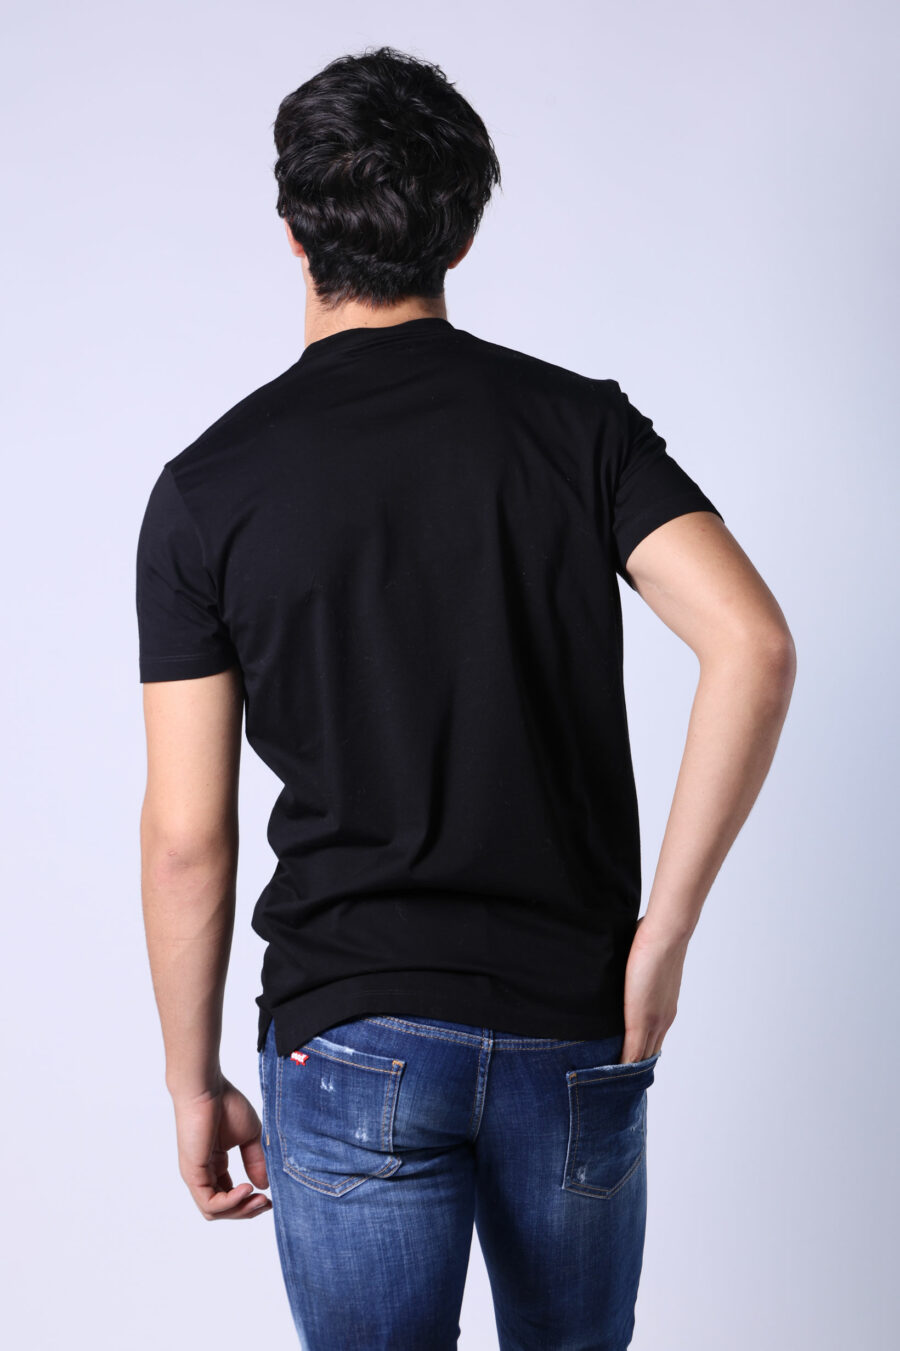 Camiseta negra con maxilogo monocromático redondo - Untitled Catalog 05512